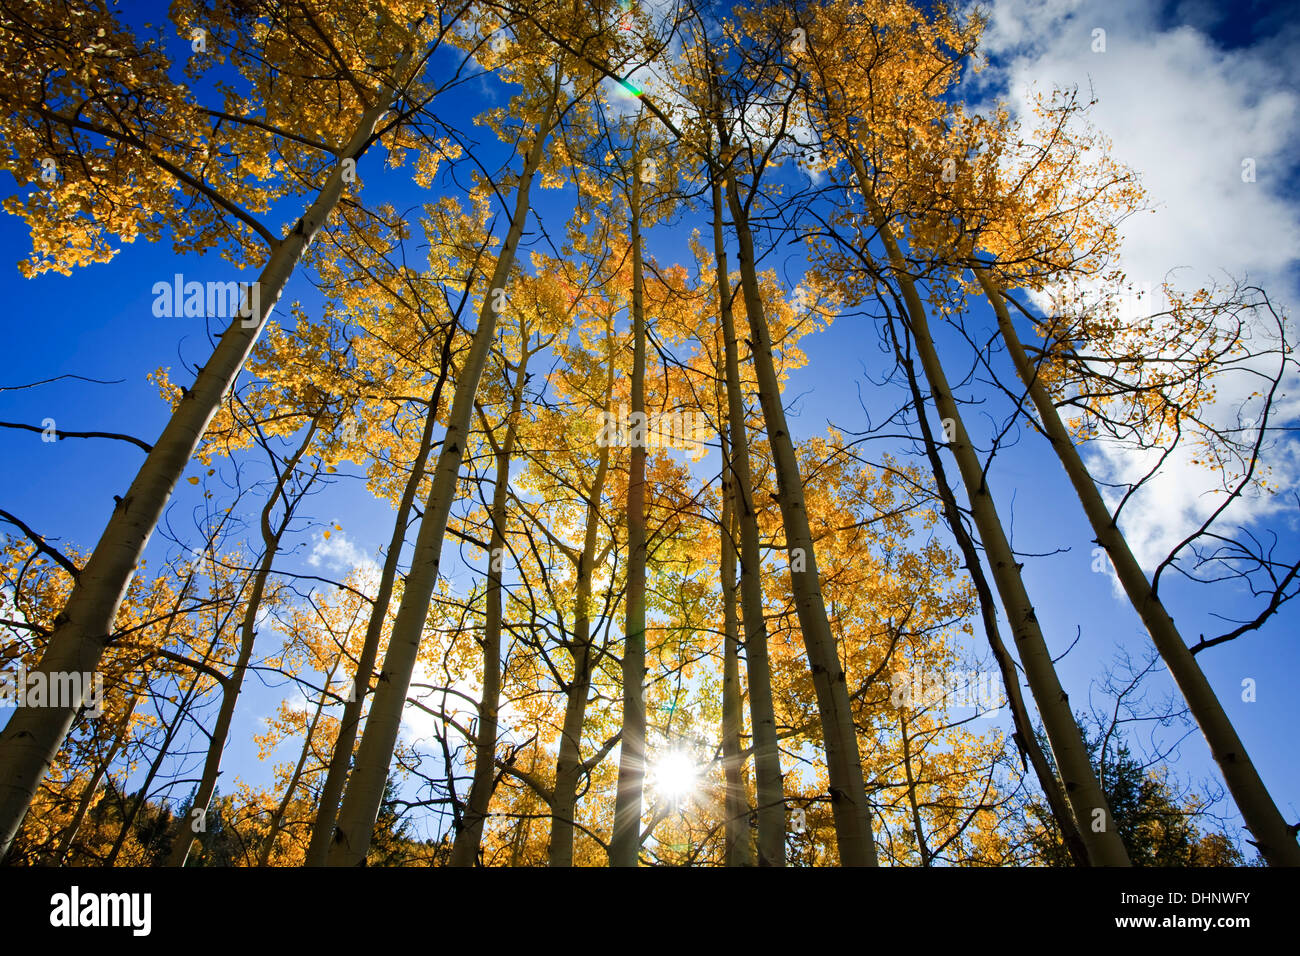 Par Sunburst trembles en couleurs d'automne, le tremble Vista Trail, Santa Fe National Forest, Nouveau Mexique USA Banque D'Images